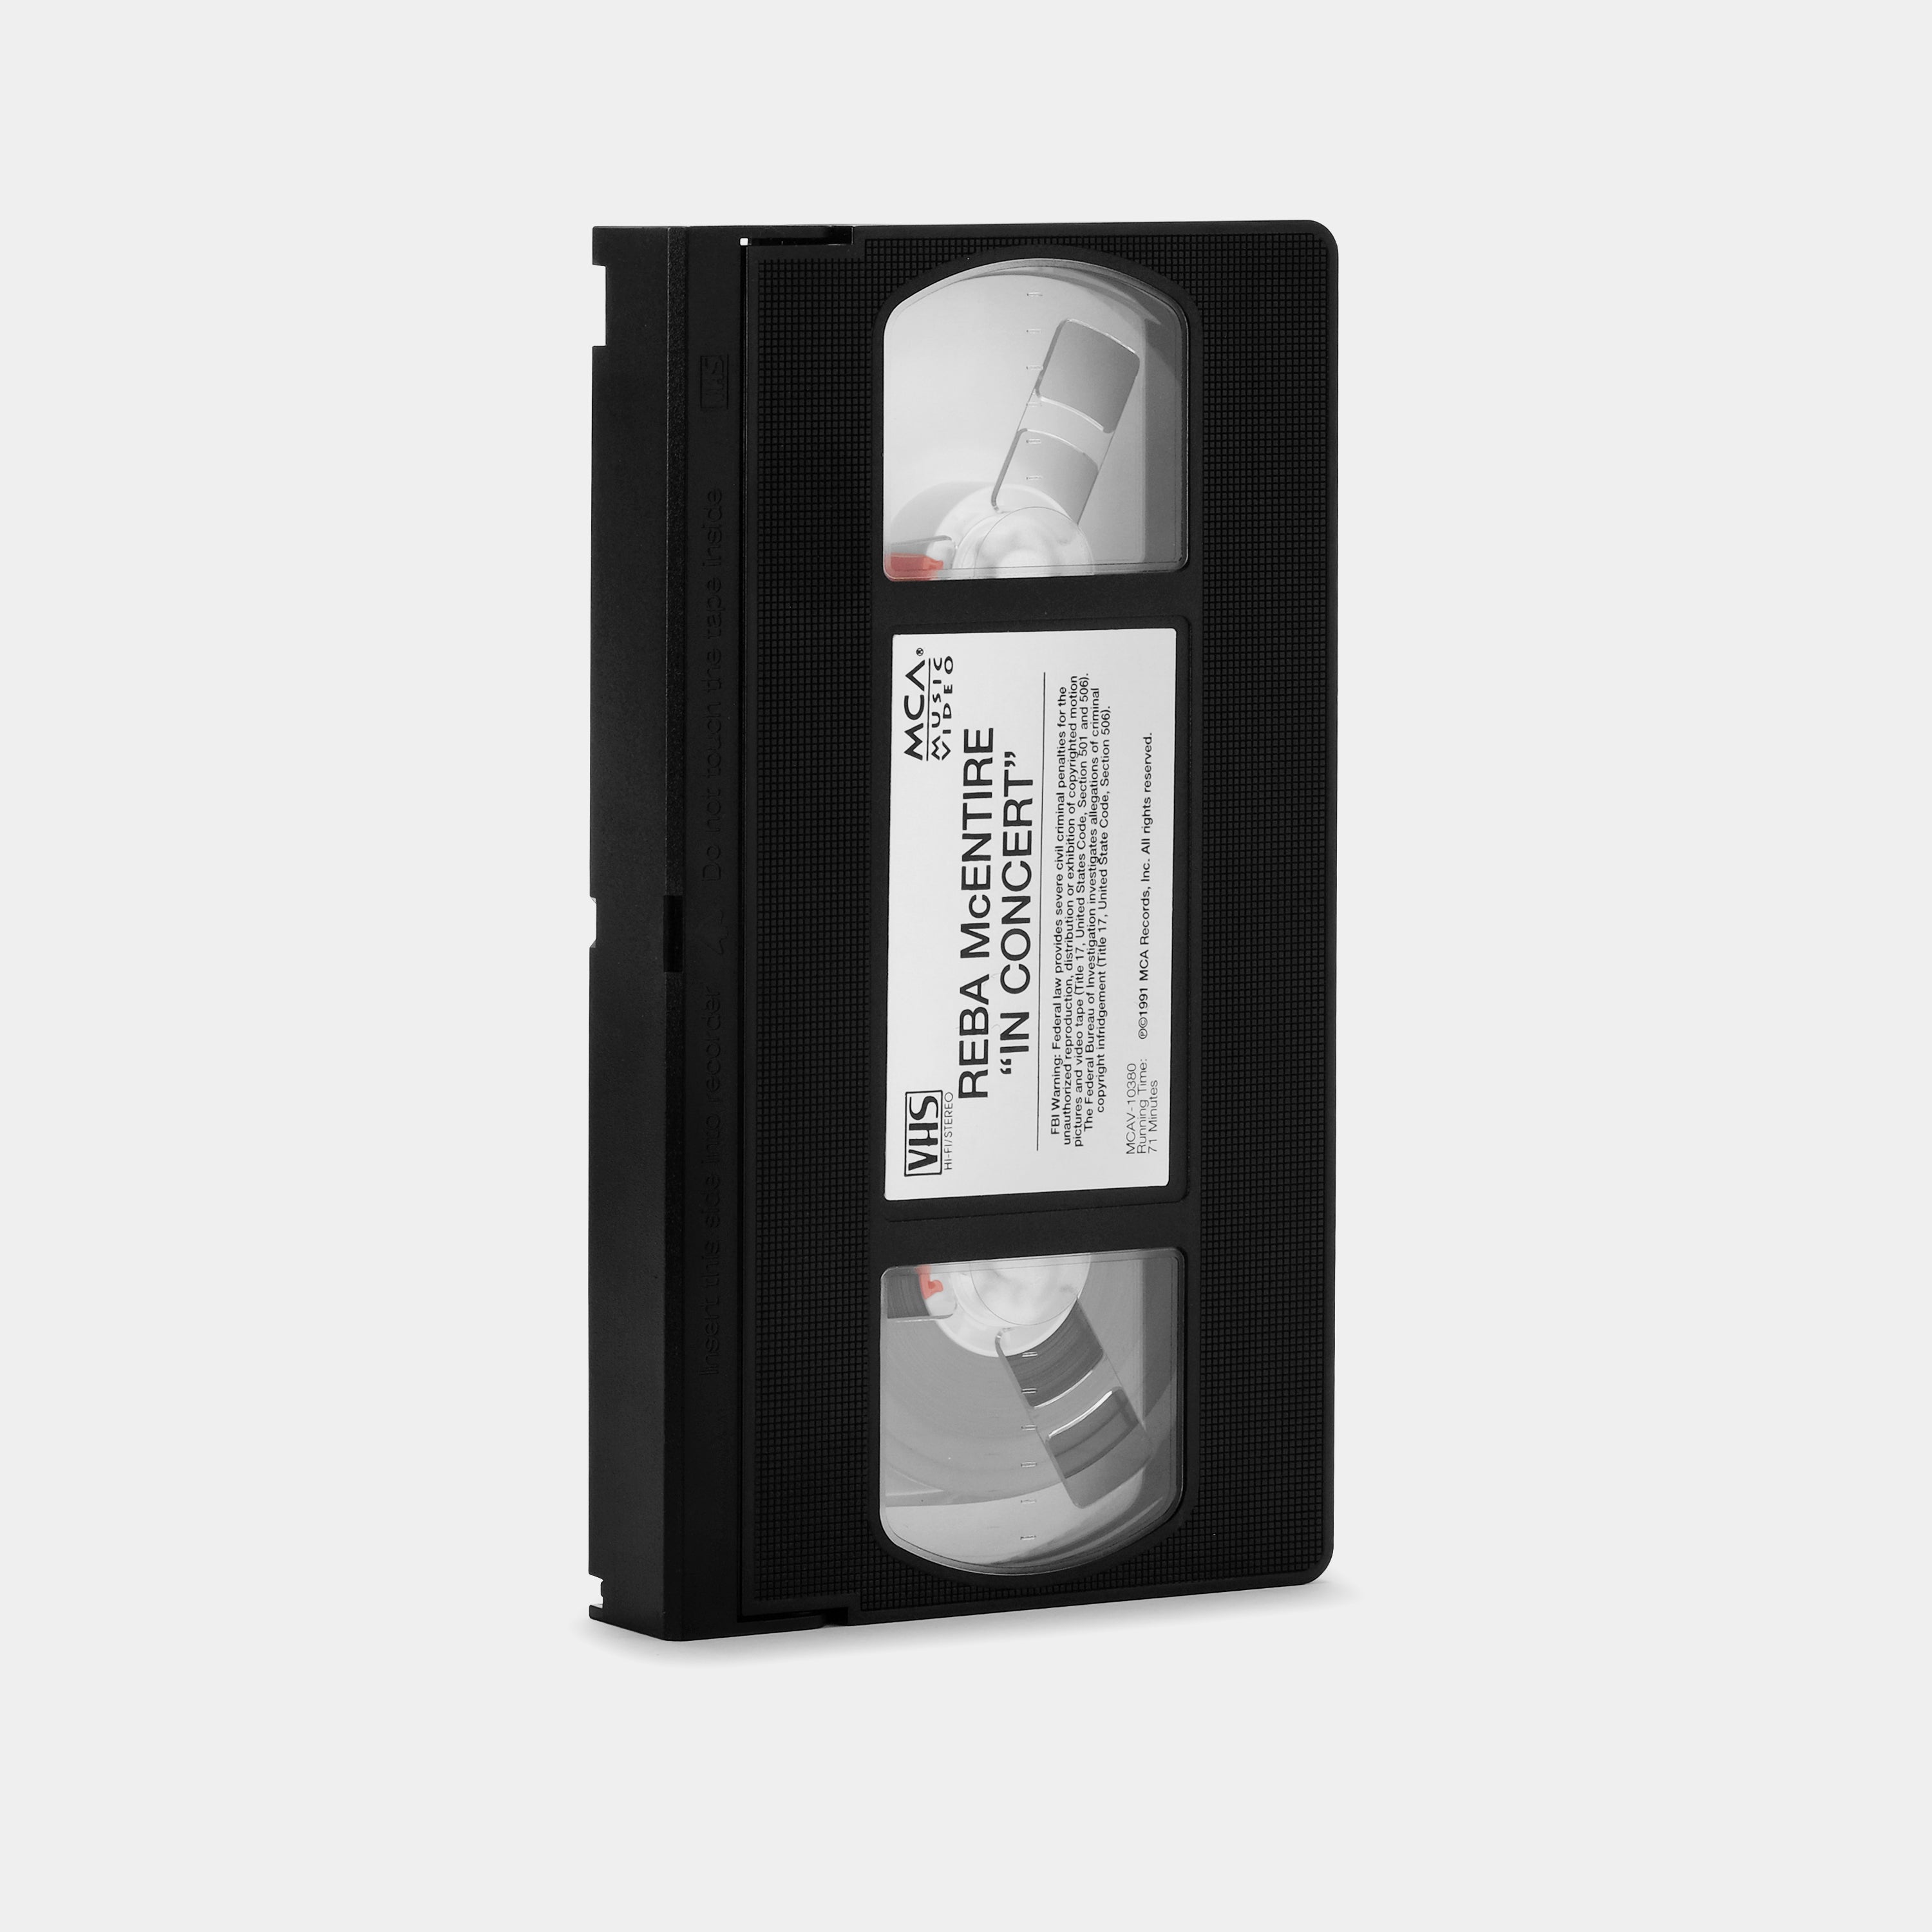 Reba in Concert VHS Tape